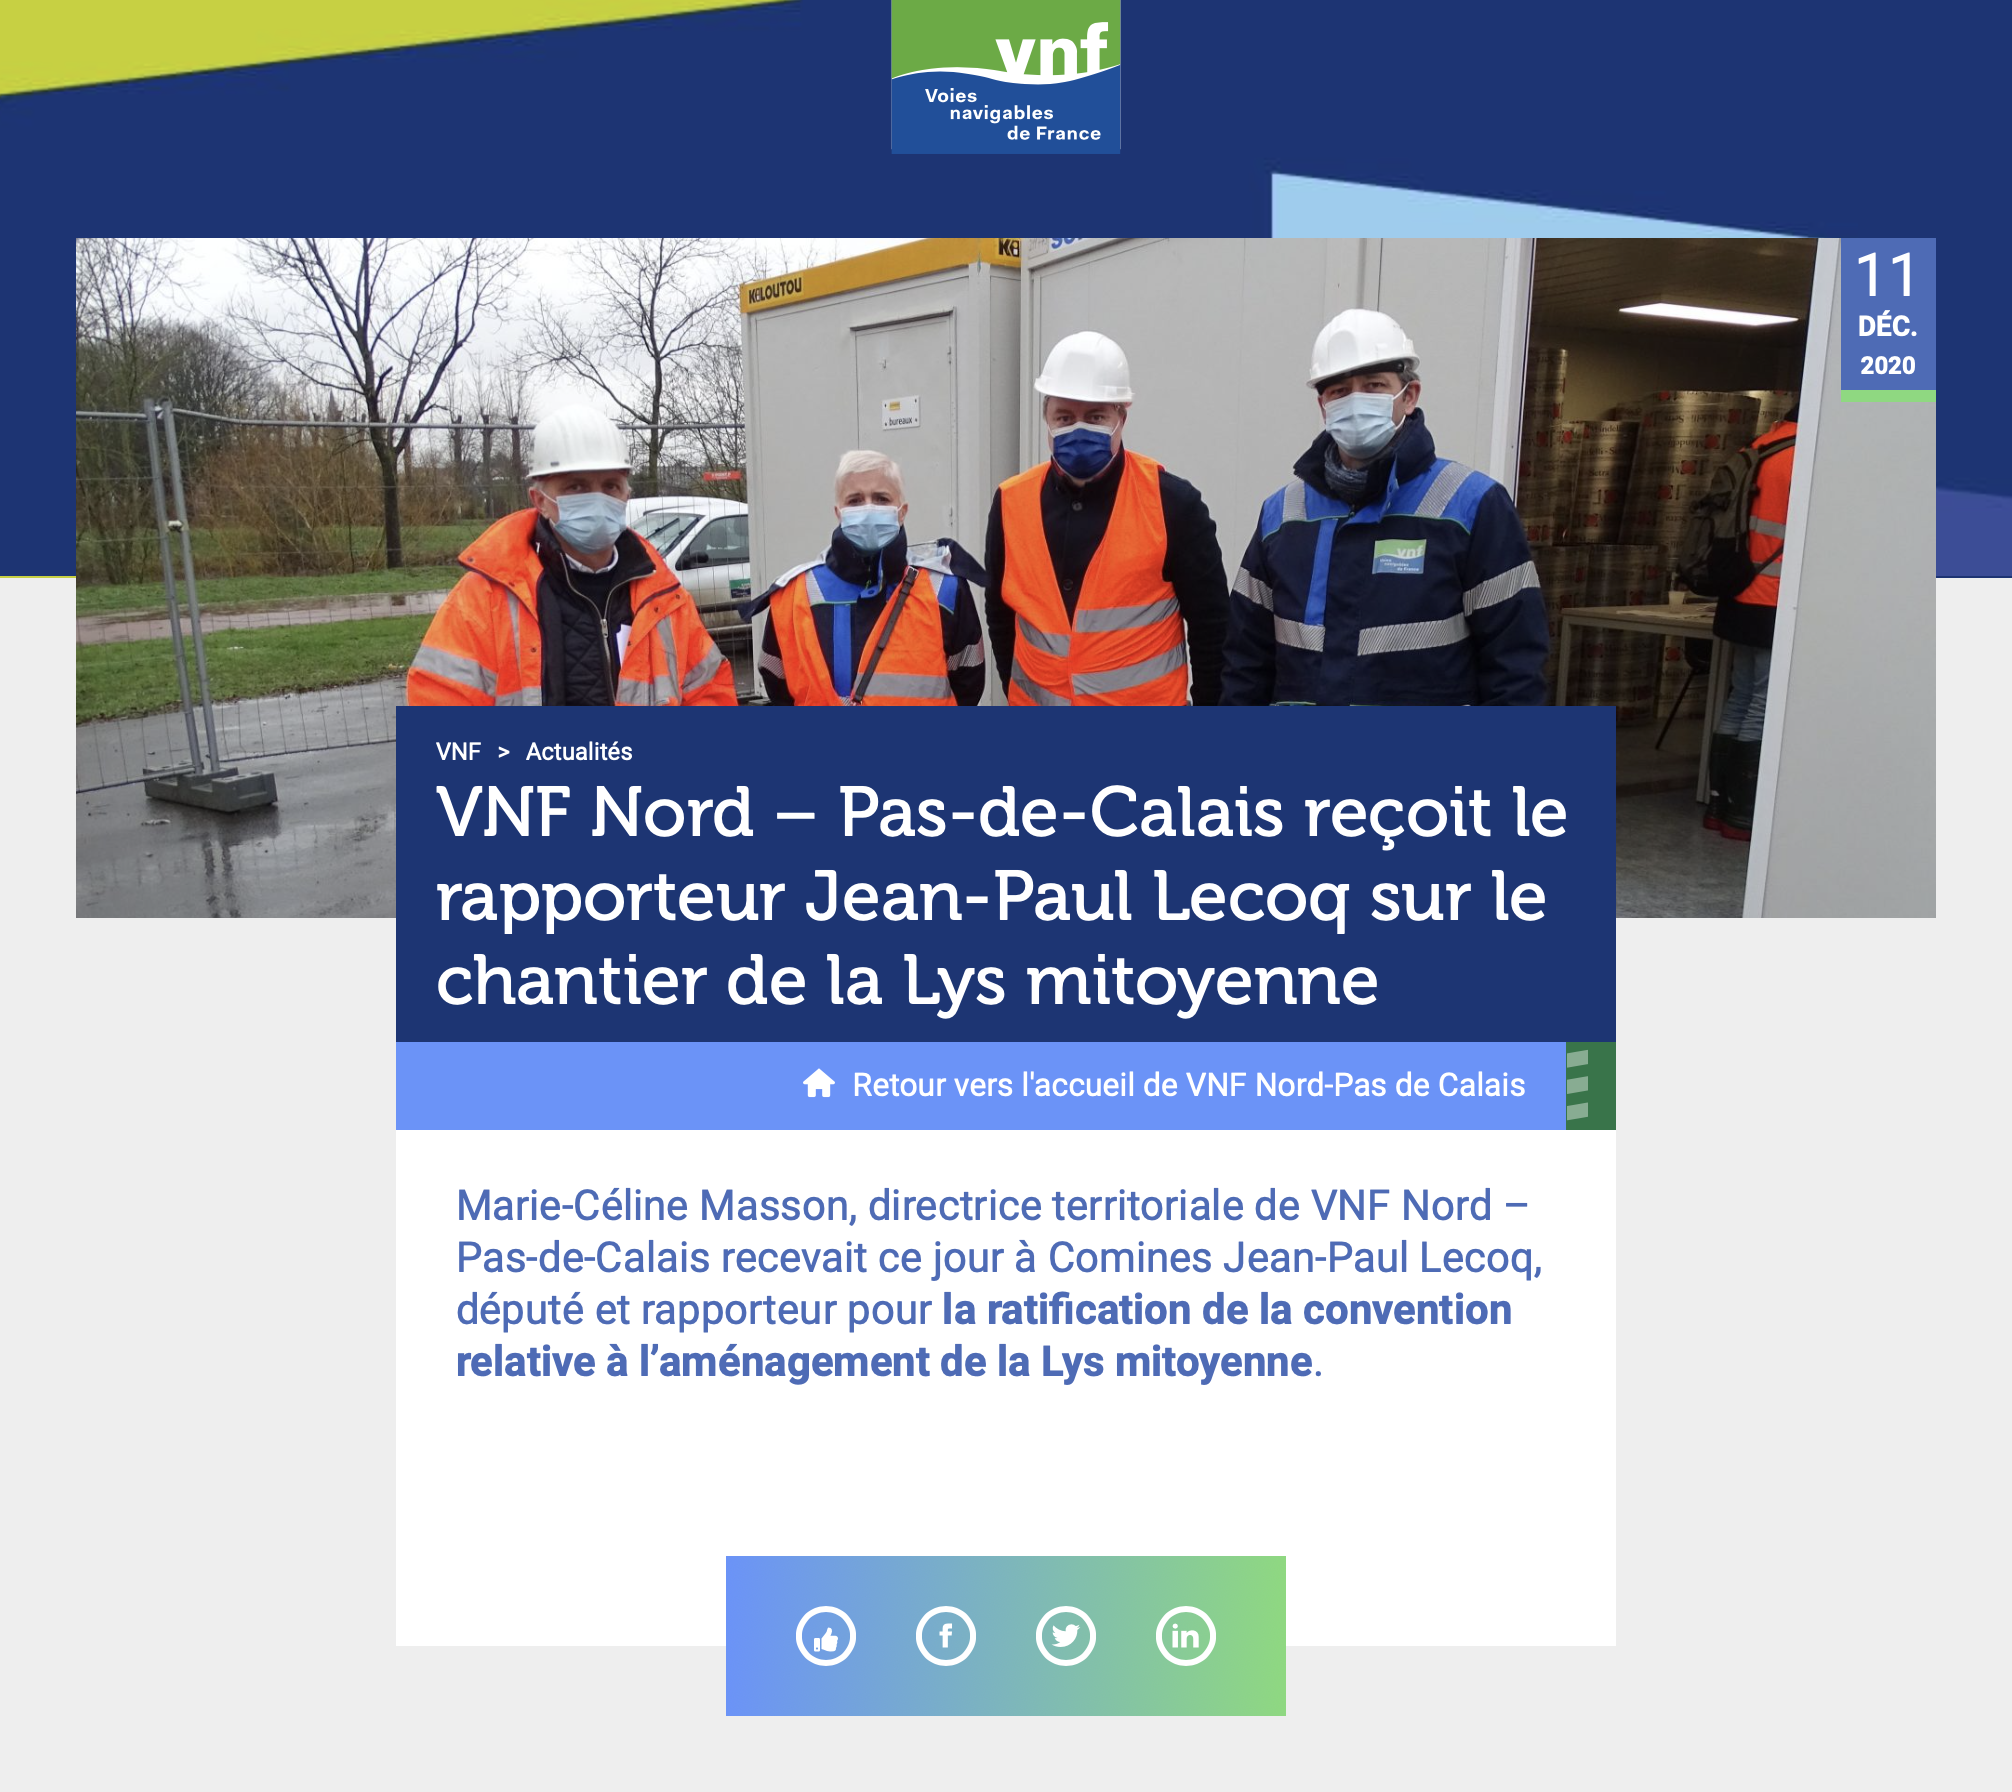 VNF Nord - Pas-de-Calais reçoit le rapporteur Jean-Paul Lecoq sur le chantier de la Lys mitoyenne - VNF {HTML}